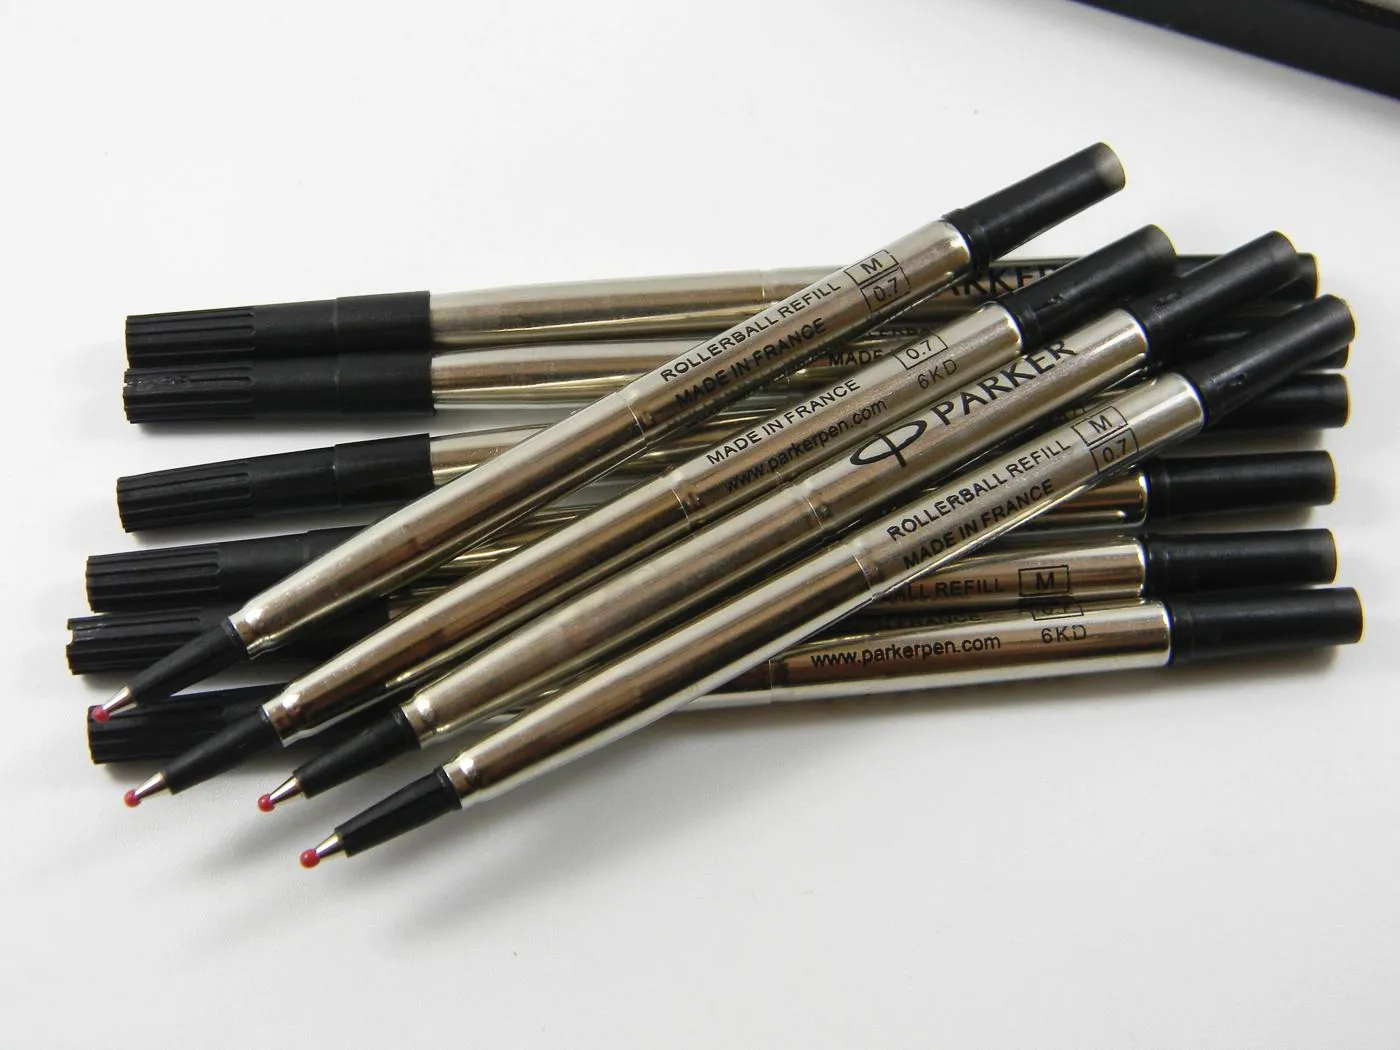 10 قطعة معدنية باركر أزرق أسود نوعية جيدة 0.7 مللي متر عبوات قلم حبر جاف